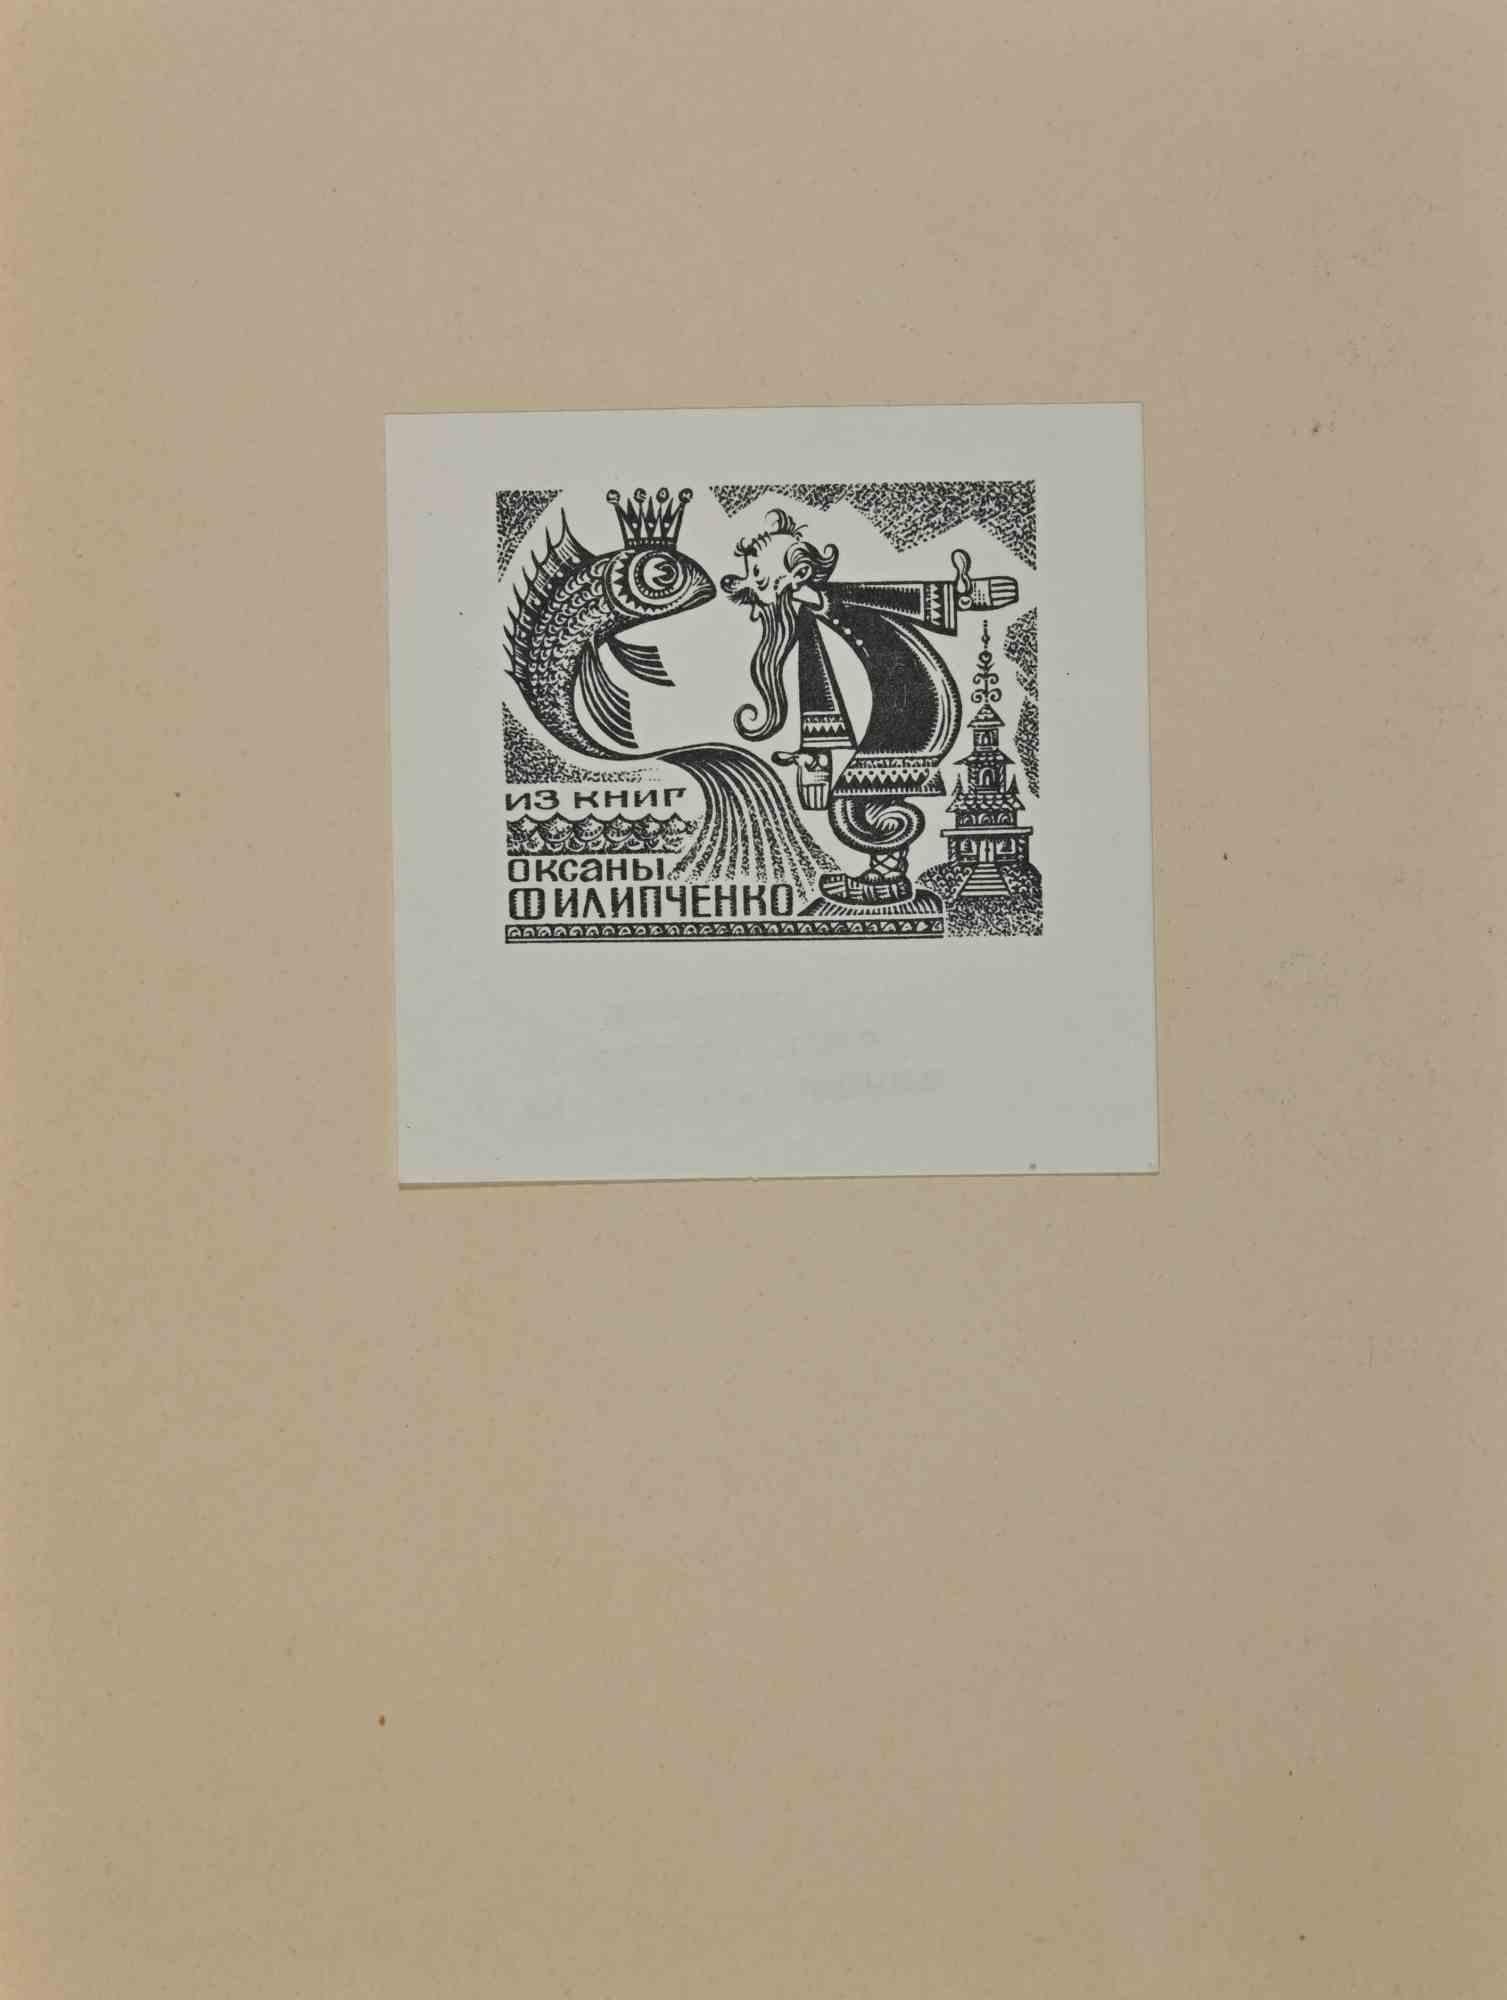  Ex Libris - Gravure sur bois - Milieu du 20e siècle - Art de Unknown